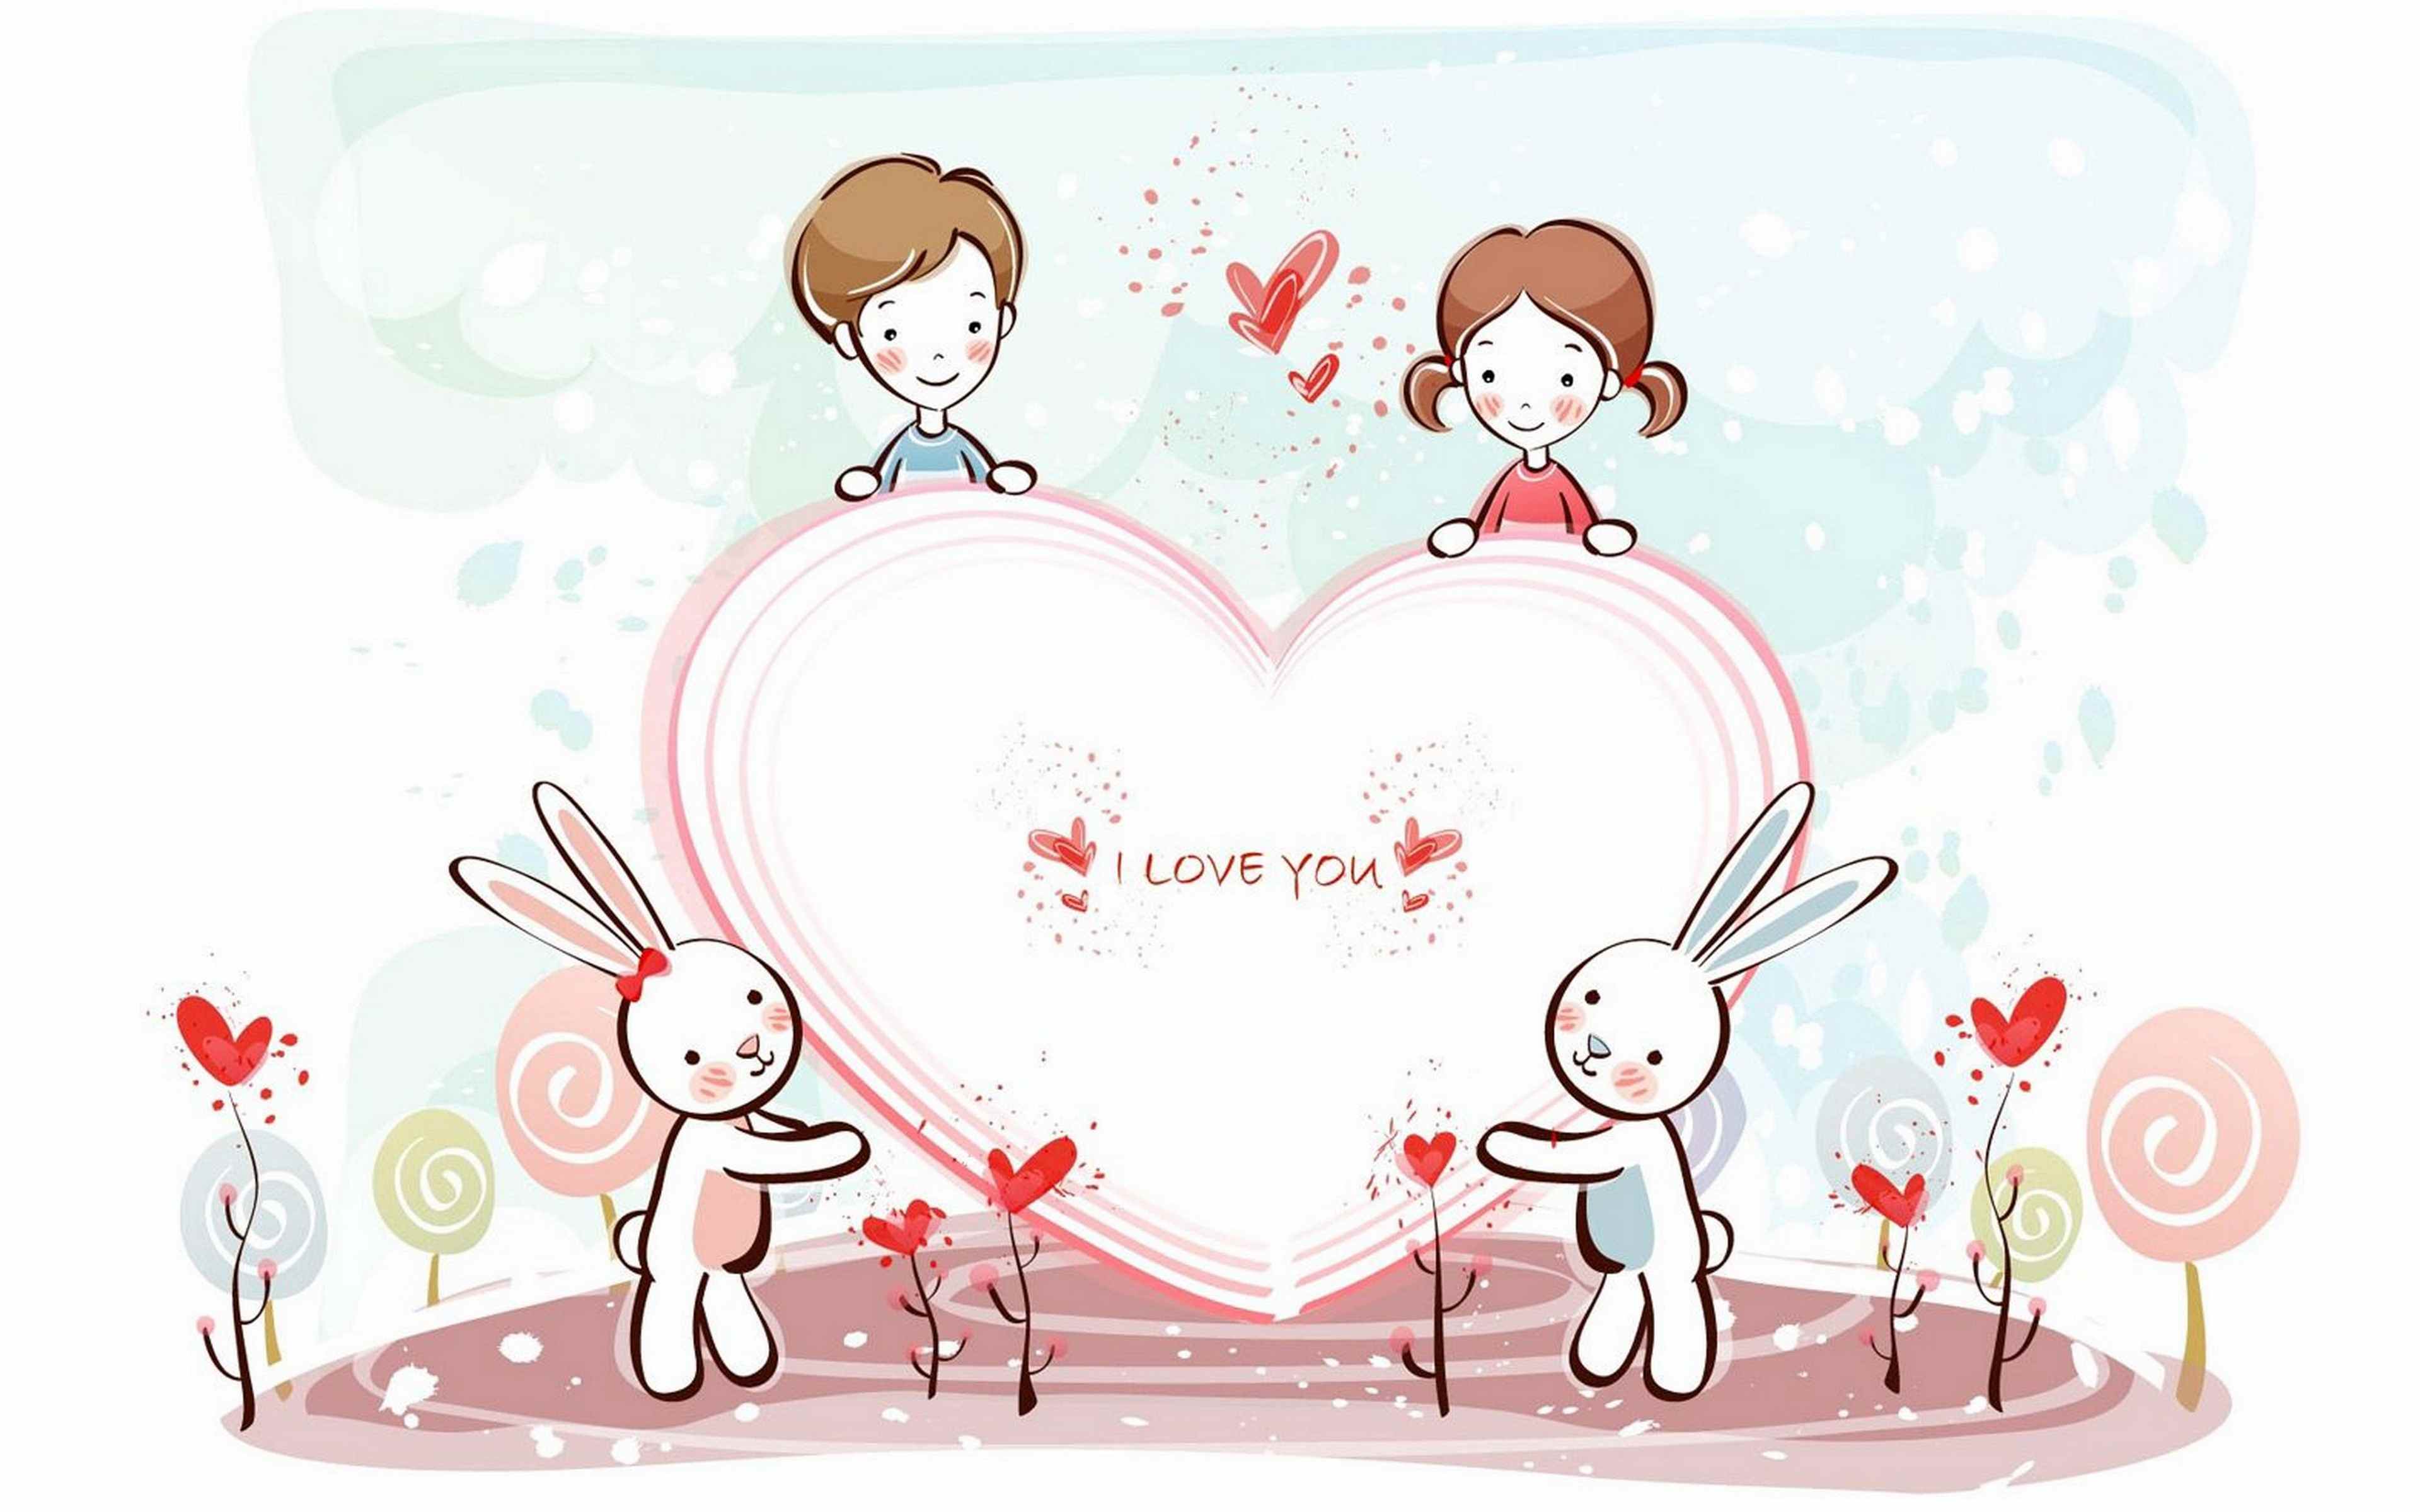 Love valentine s. С днем всех влюбленных. Открытка на день влюбленных рисунок.